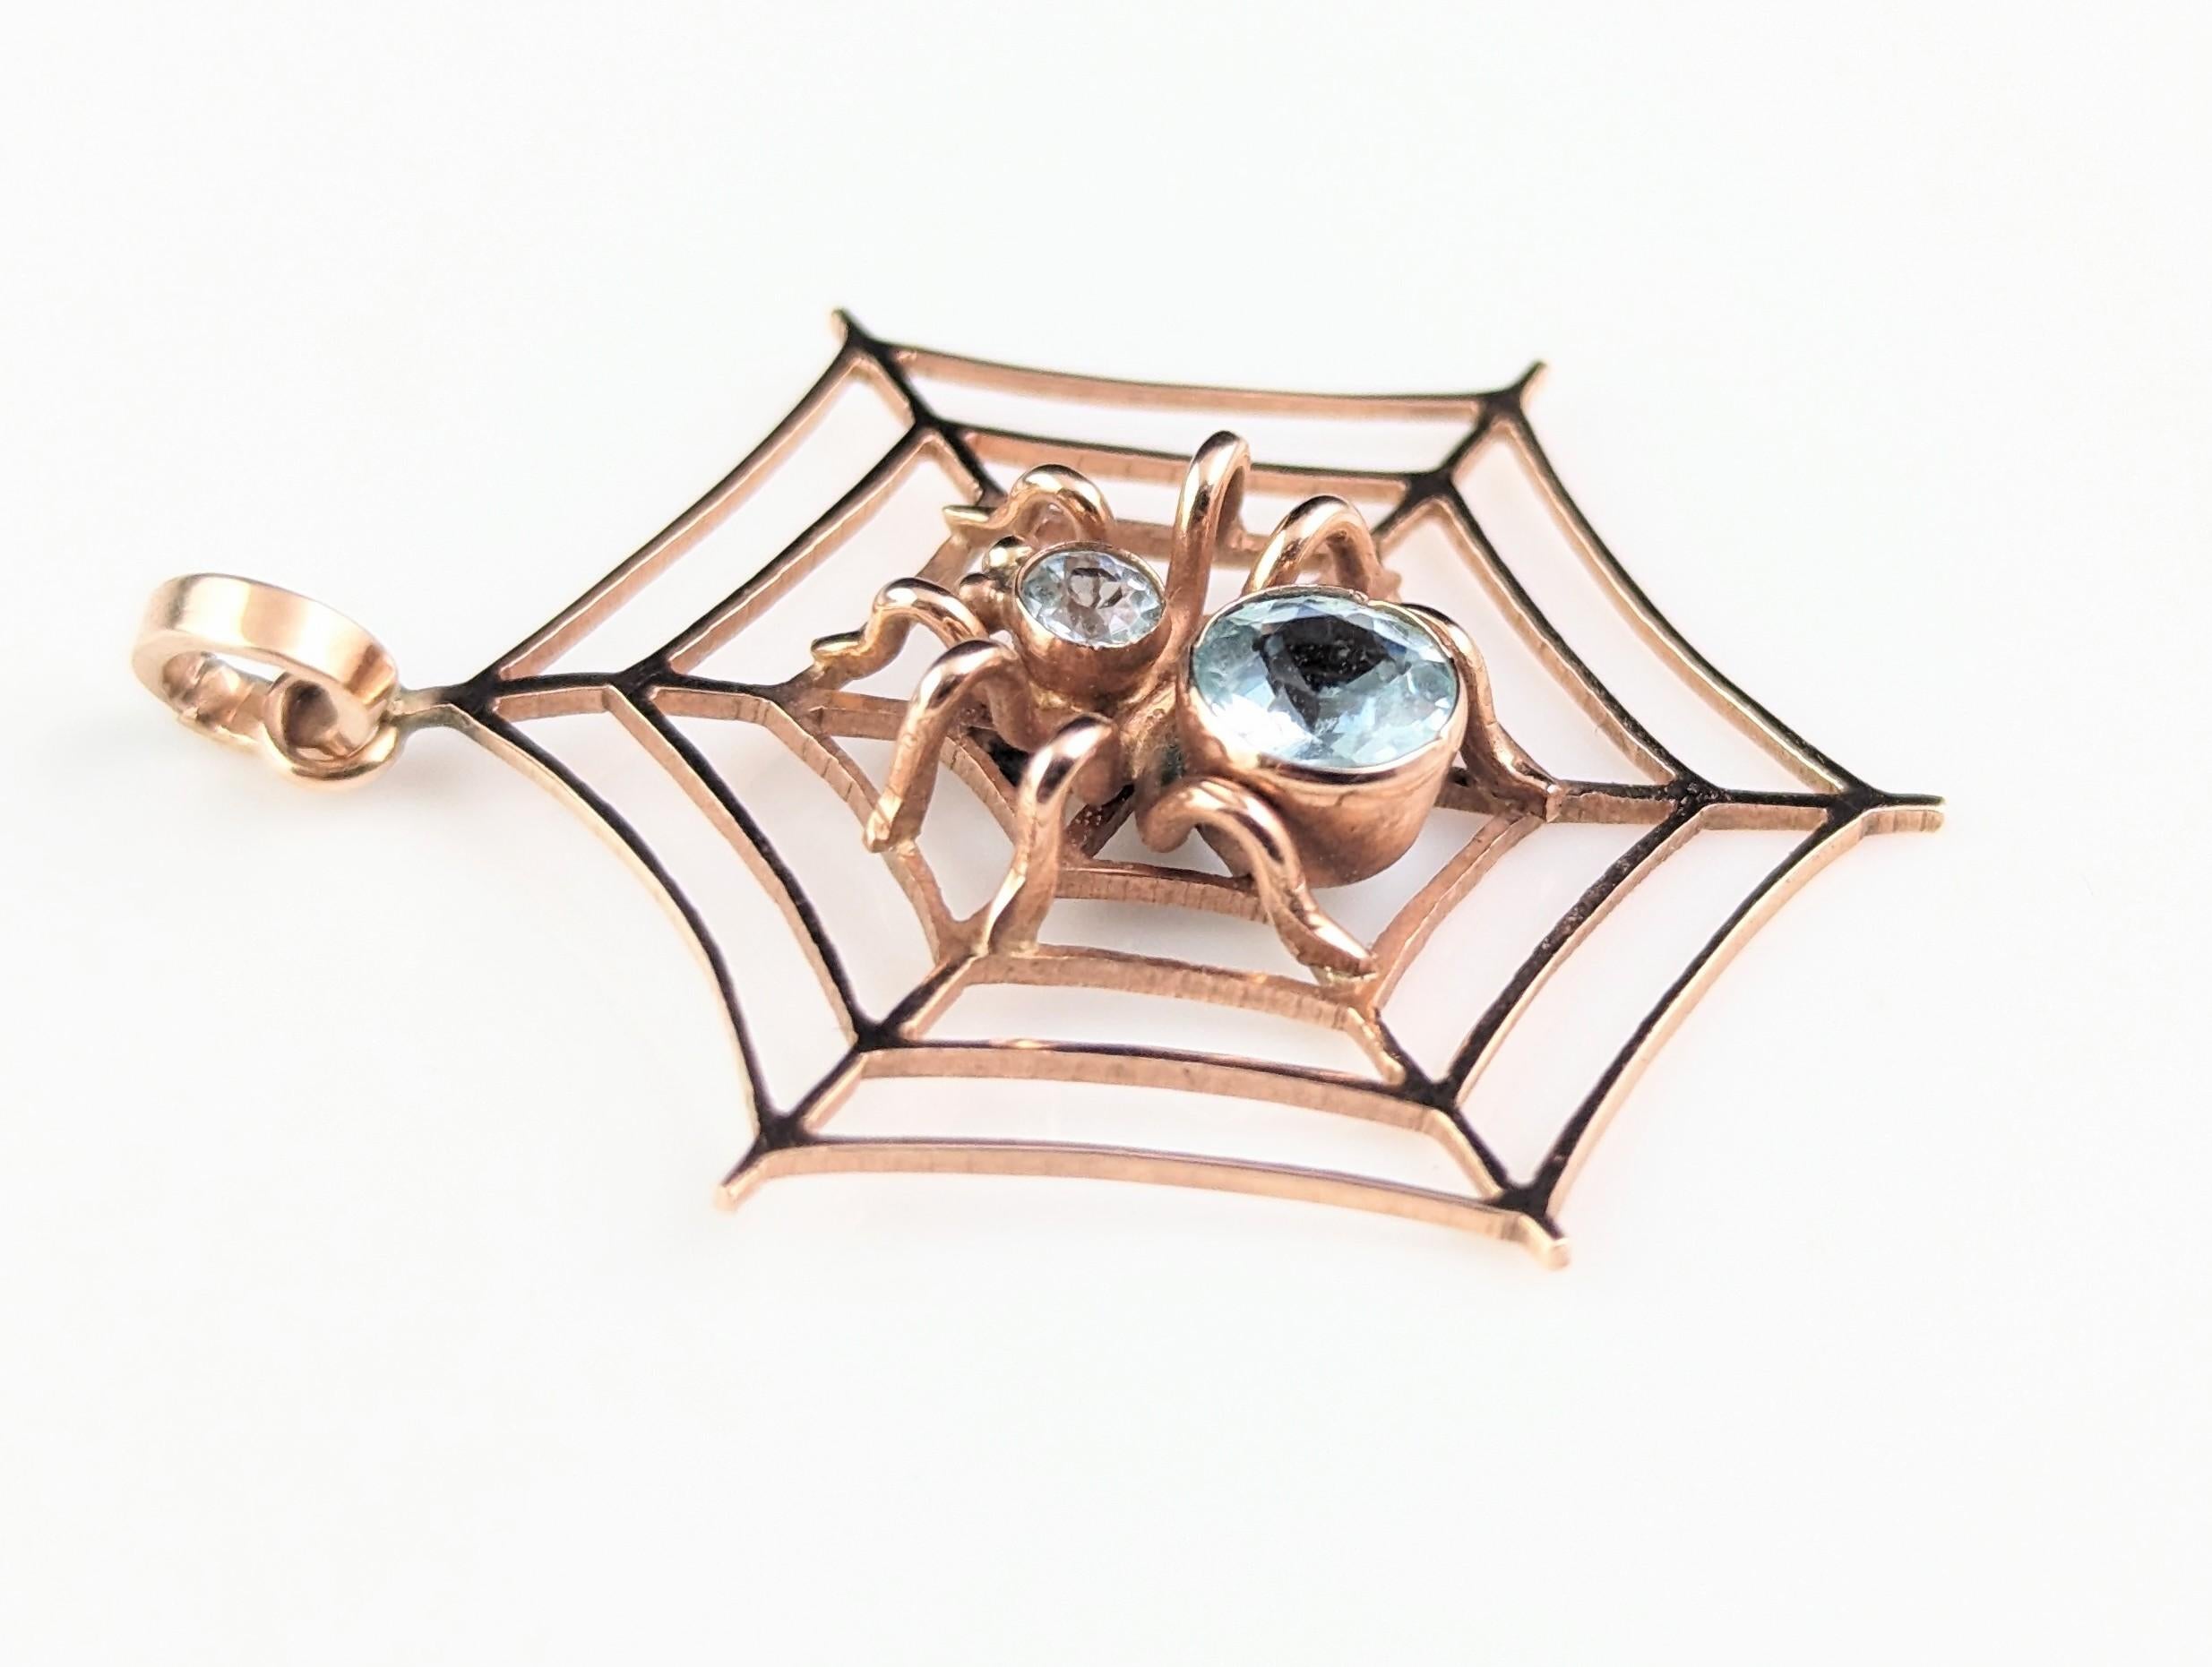 Antique Spider and Web pendant, Aquamarine, 9k rose gold  8